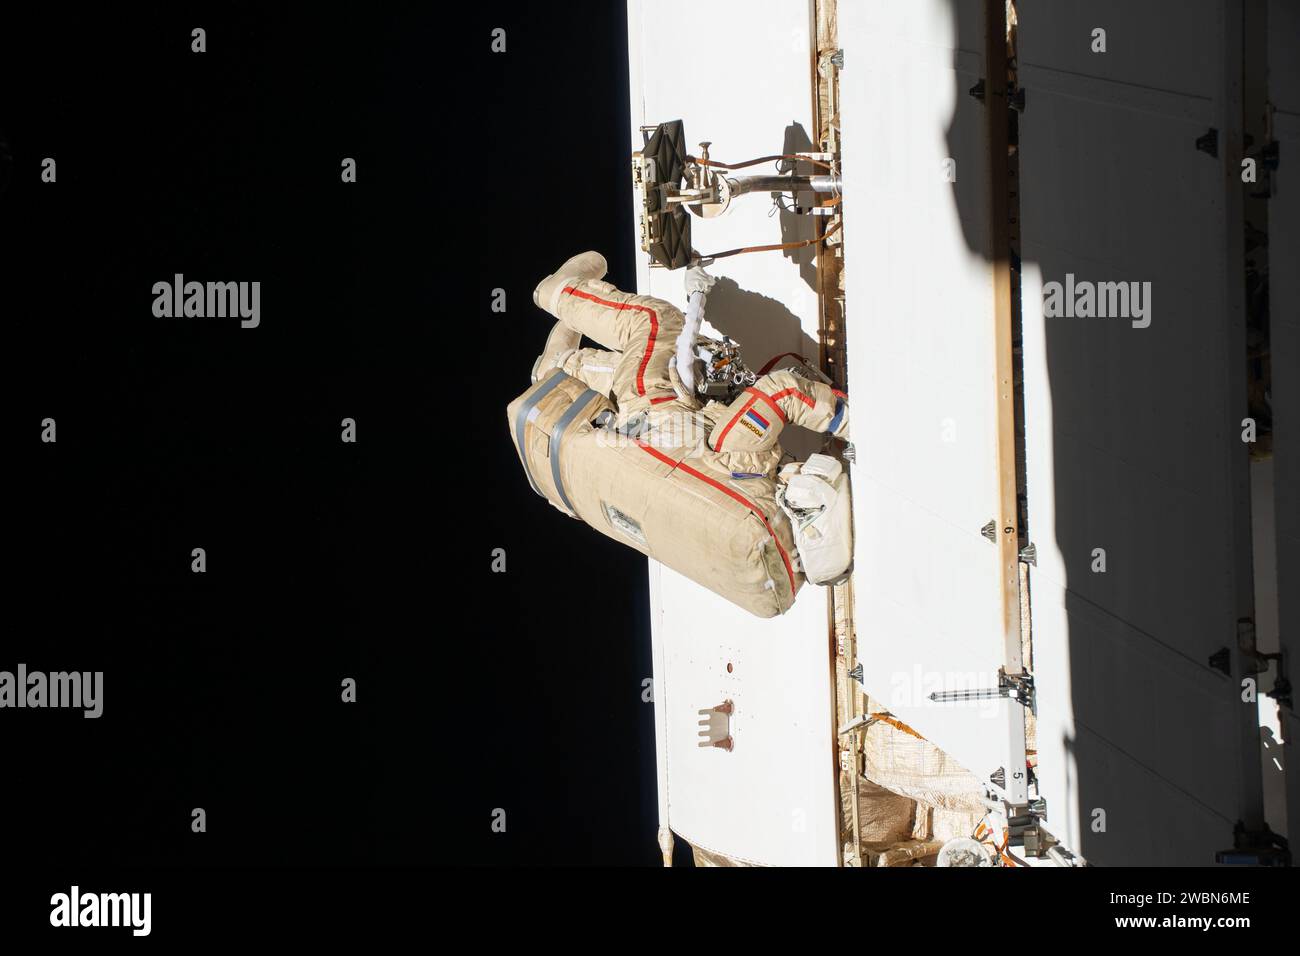 Iss070e009090 (25. Oktober 2023) --- der Flugingenieur Oleg Kononenko der Expedition 70 aus Roscosmos wird während eines Raumwanderns gezeigt, um einen Ersatzkühler zu inspizieren, einen Nanosatelliten einzusetzen und Kommunikationshardware auf dem Nauka-Wissenschaftsmodul der Internationalen Raumstation zu installieren. Stockfoto